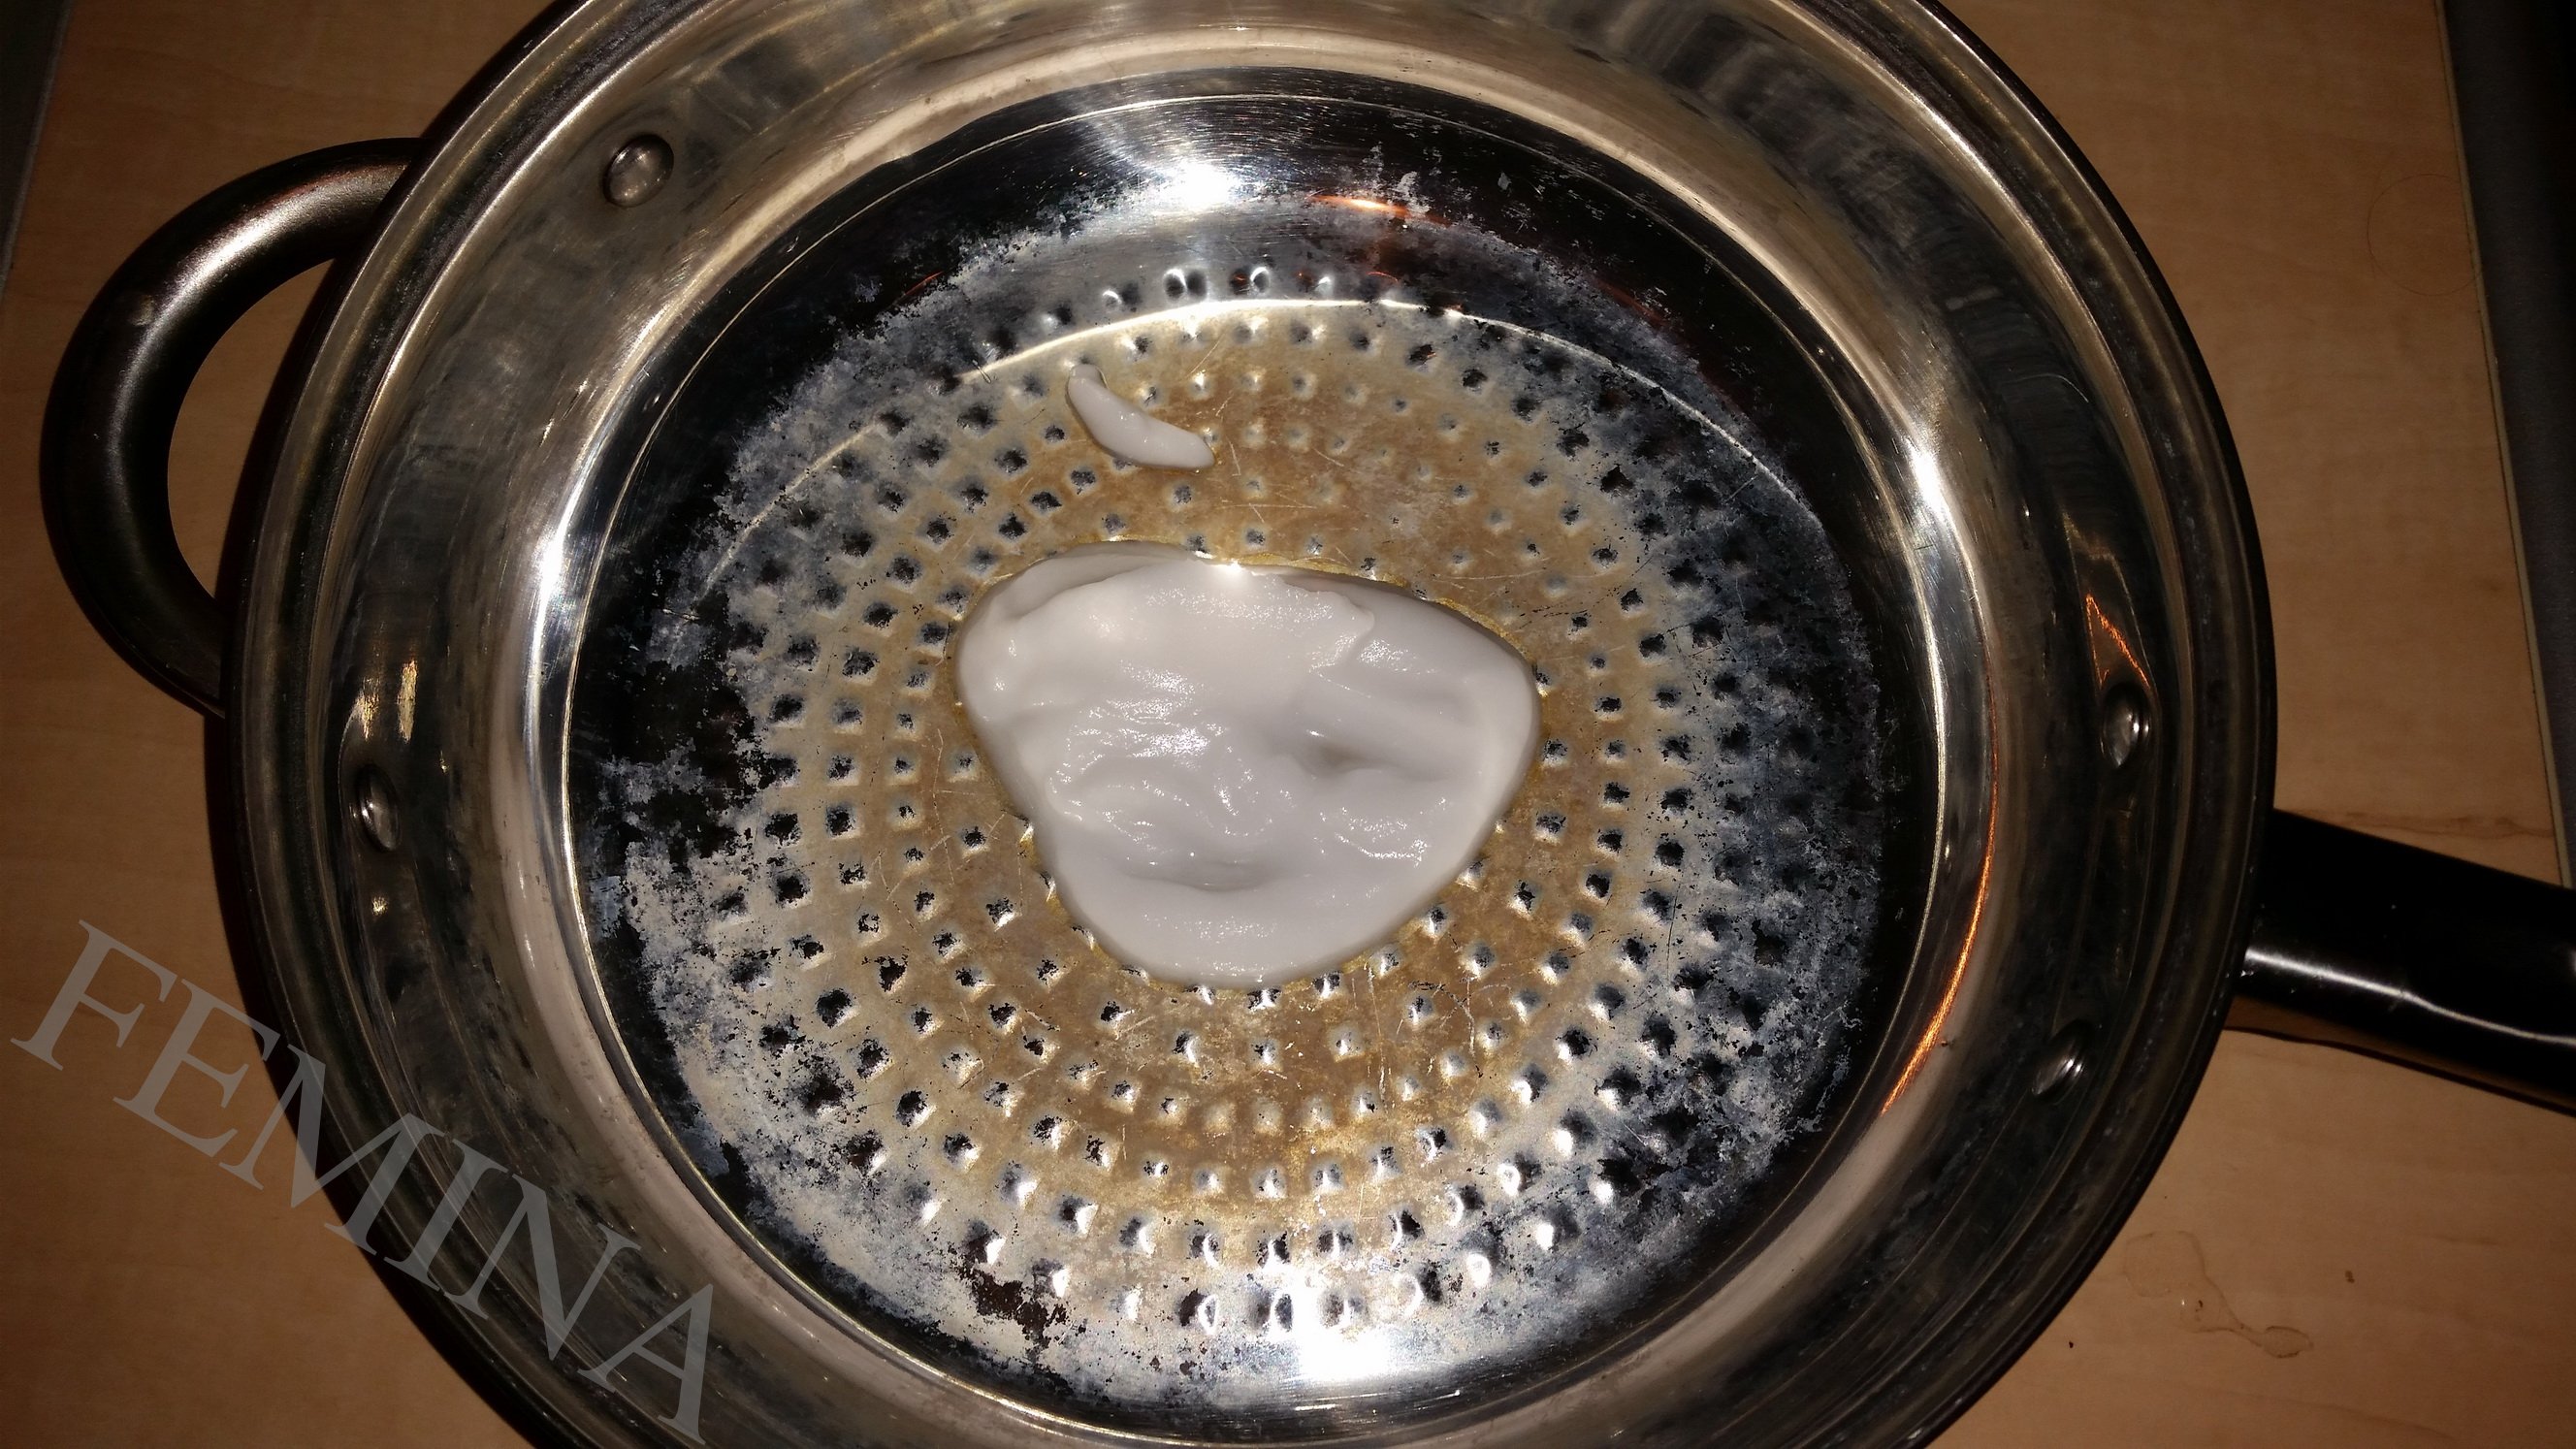  Čudo-pasta za čišćenje zagorele masnoće sa sudova.